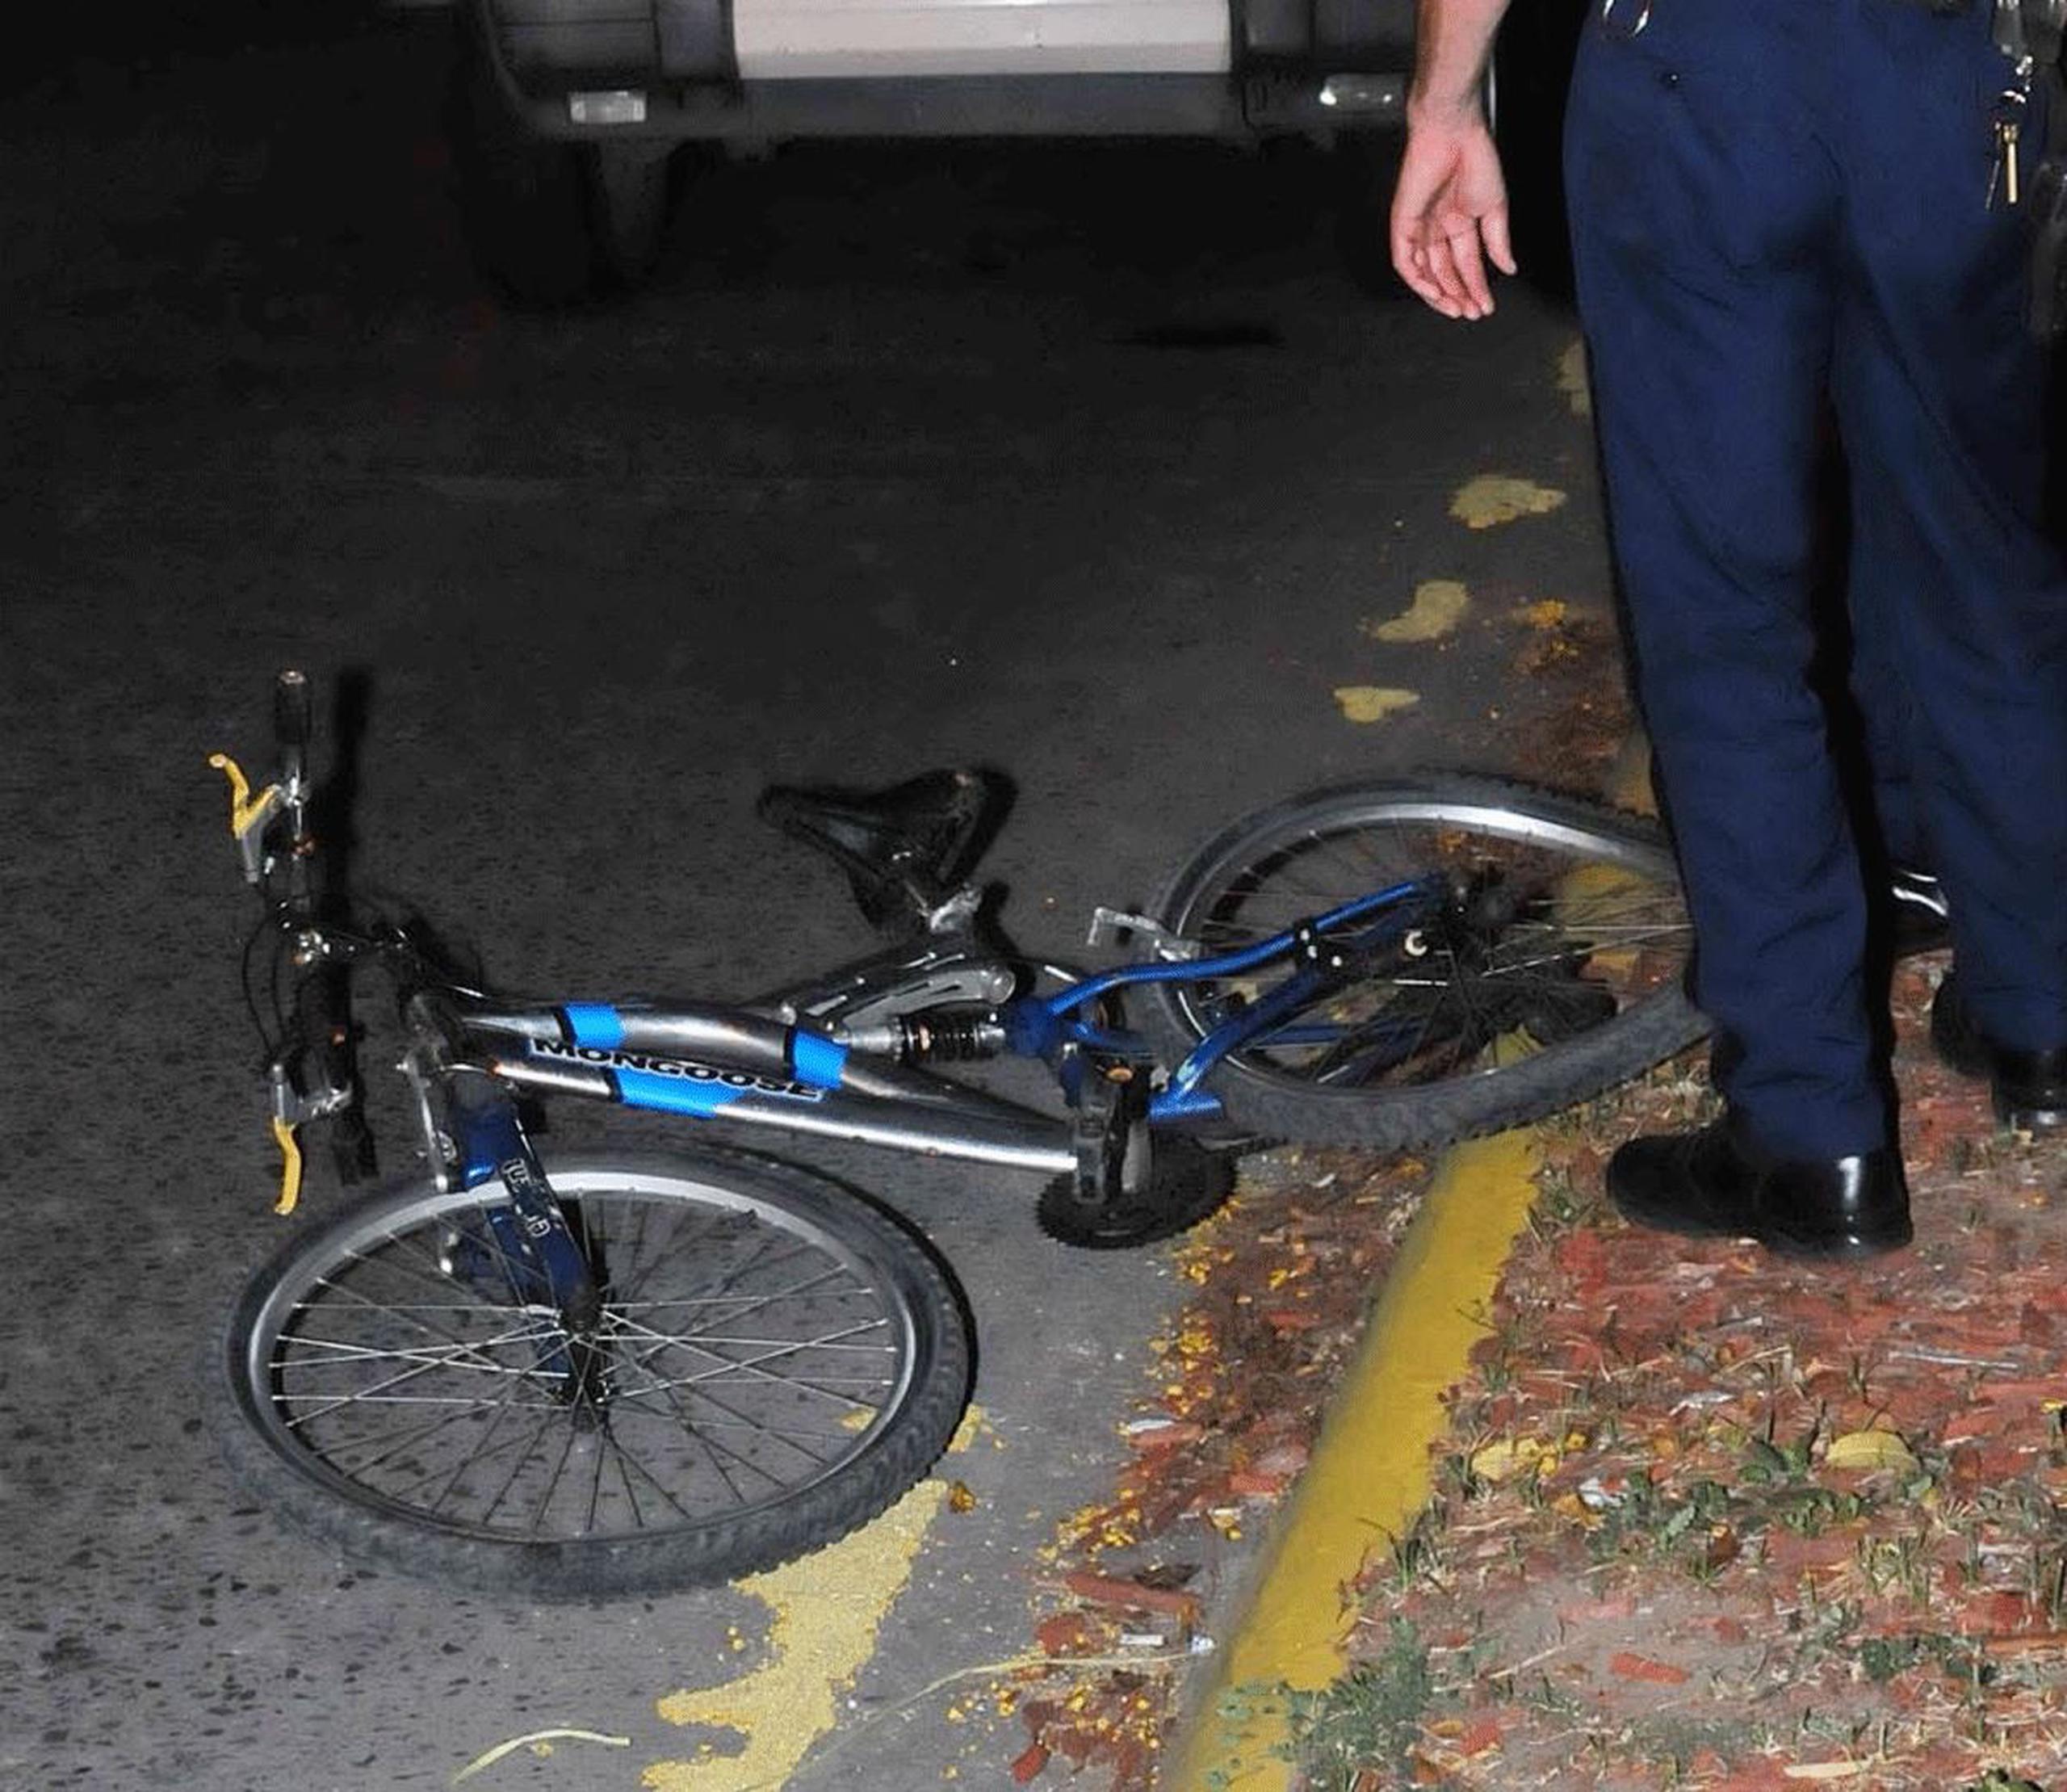 La Policía identificó como Héctor Colón Cartagena al ciclista de 54 años que el domingo perdió la vida a consecuencia de las heridas sufridas cuando un vehículo lo impactó. (GFR Media)